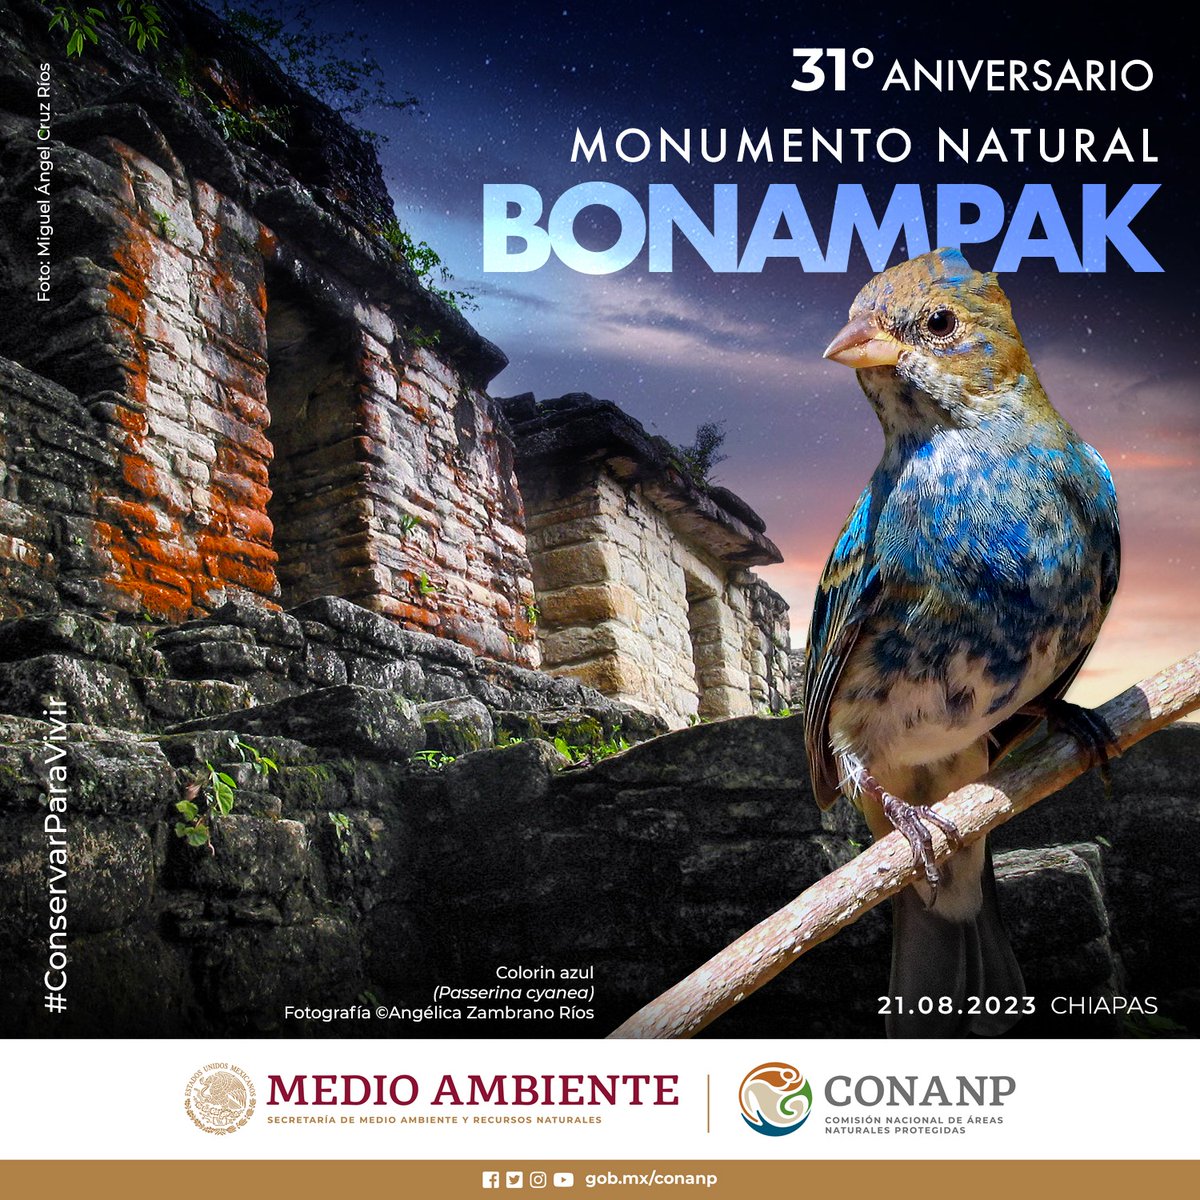 La zona arqueológica del Monumento Natural #Bonampak, en Chiapas, es famosa a nivel mundial por sus hermosos murales pintados que describen las costumbres de los antiguos mayas. 🍃 ¡Feliz aniversario, 31 años de su decreto como #ANP! #ConservarParaVivir 🍄🌿🪶🕷️🐒🐆🦎🦇🐾🦜🐊🌸